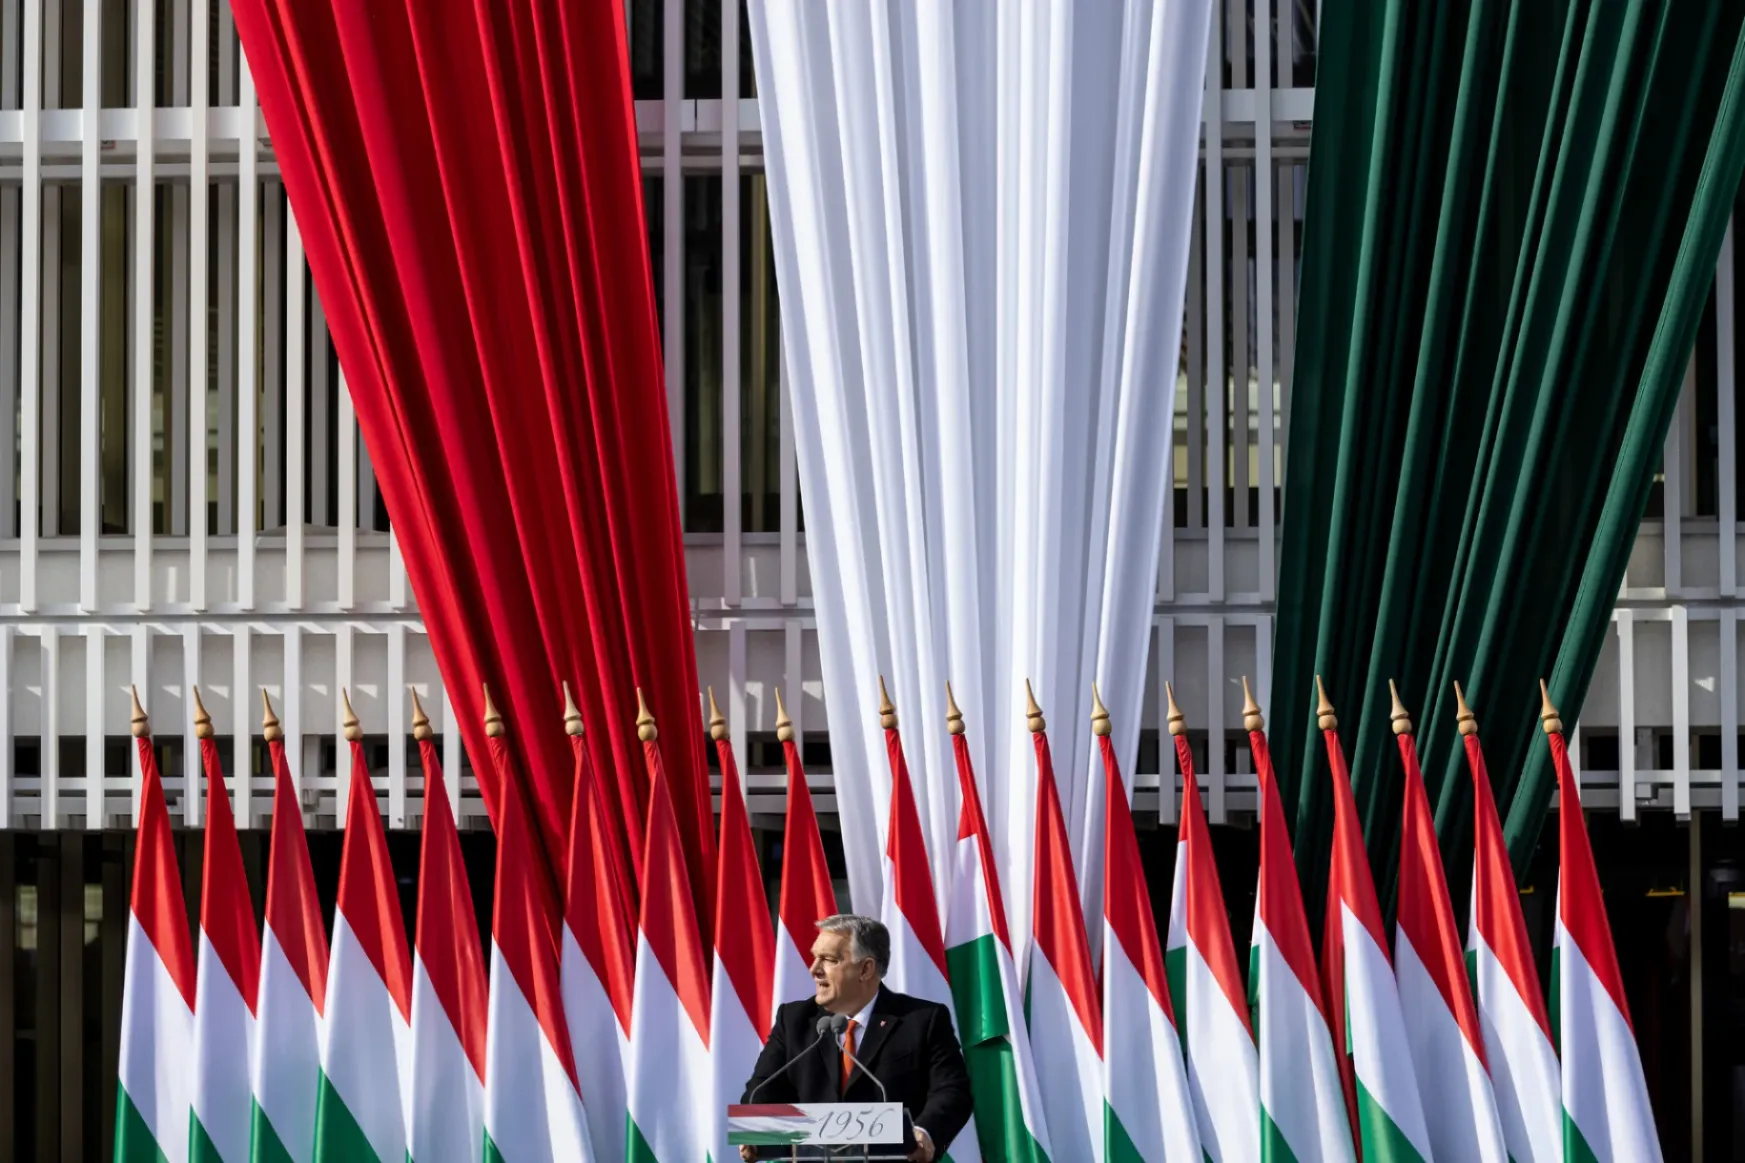 Válság kopogtat Magyarország ajtaján, a kormány kifogyott a pénzből, de Orbán ünnepi beszédében egyensúlyról és stabilitásról szónokolt